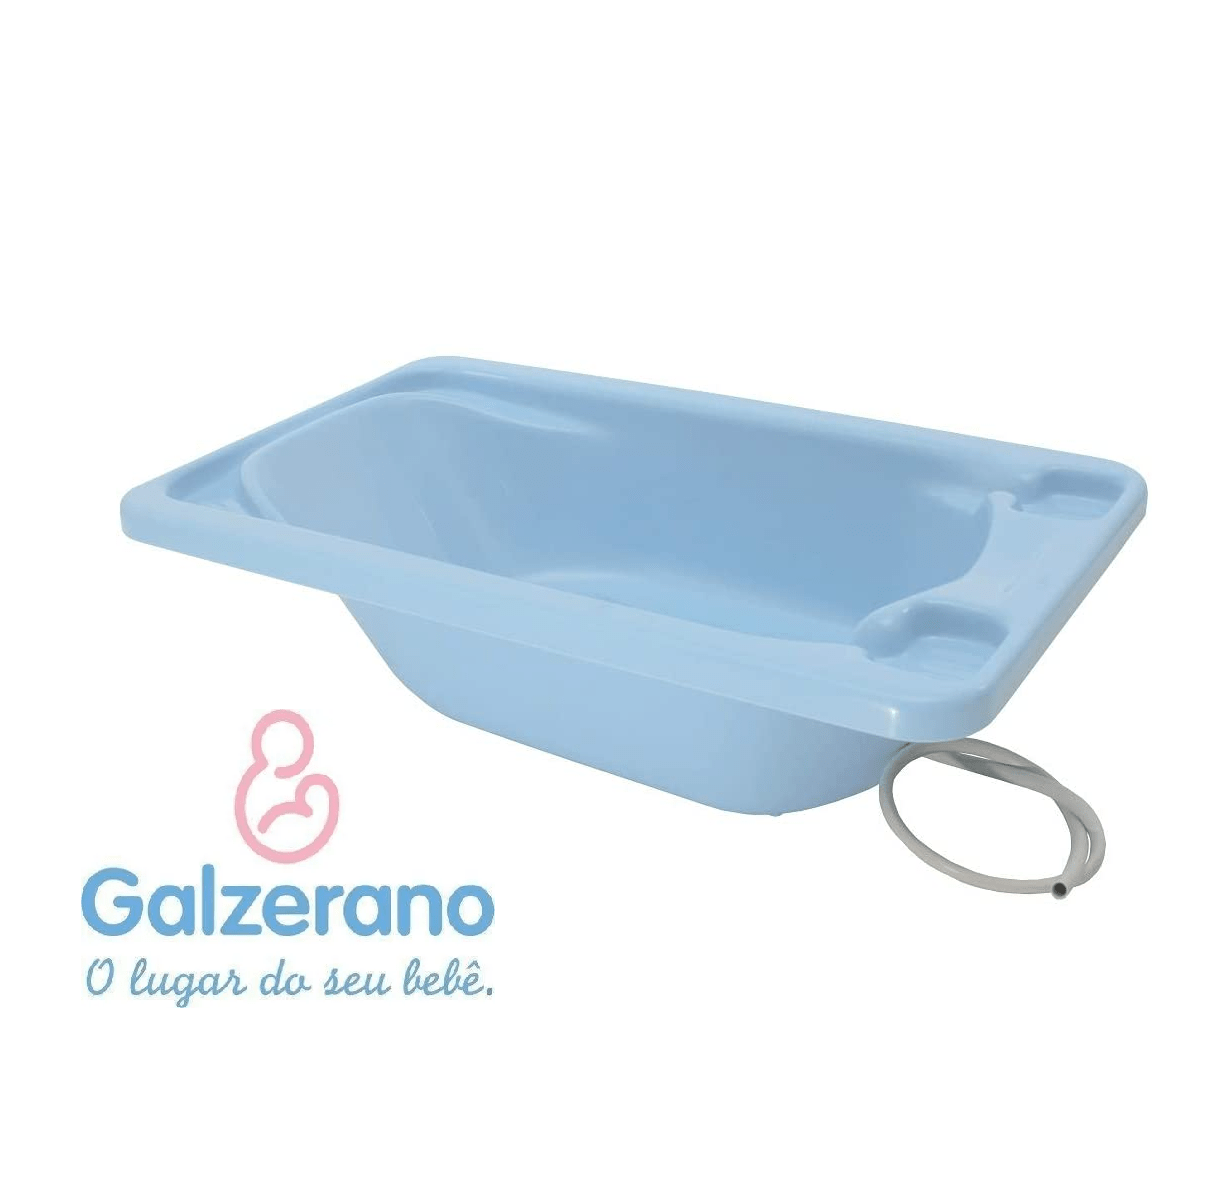 Banheira Rígida Azul Galzerano